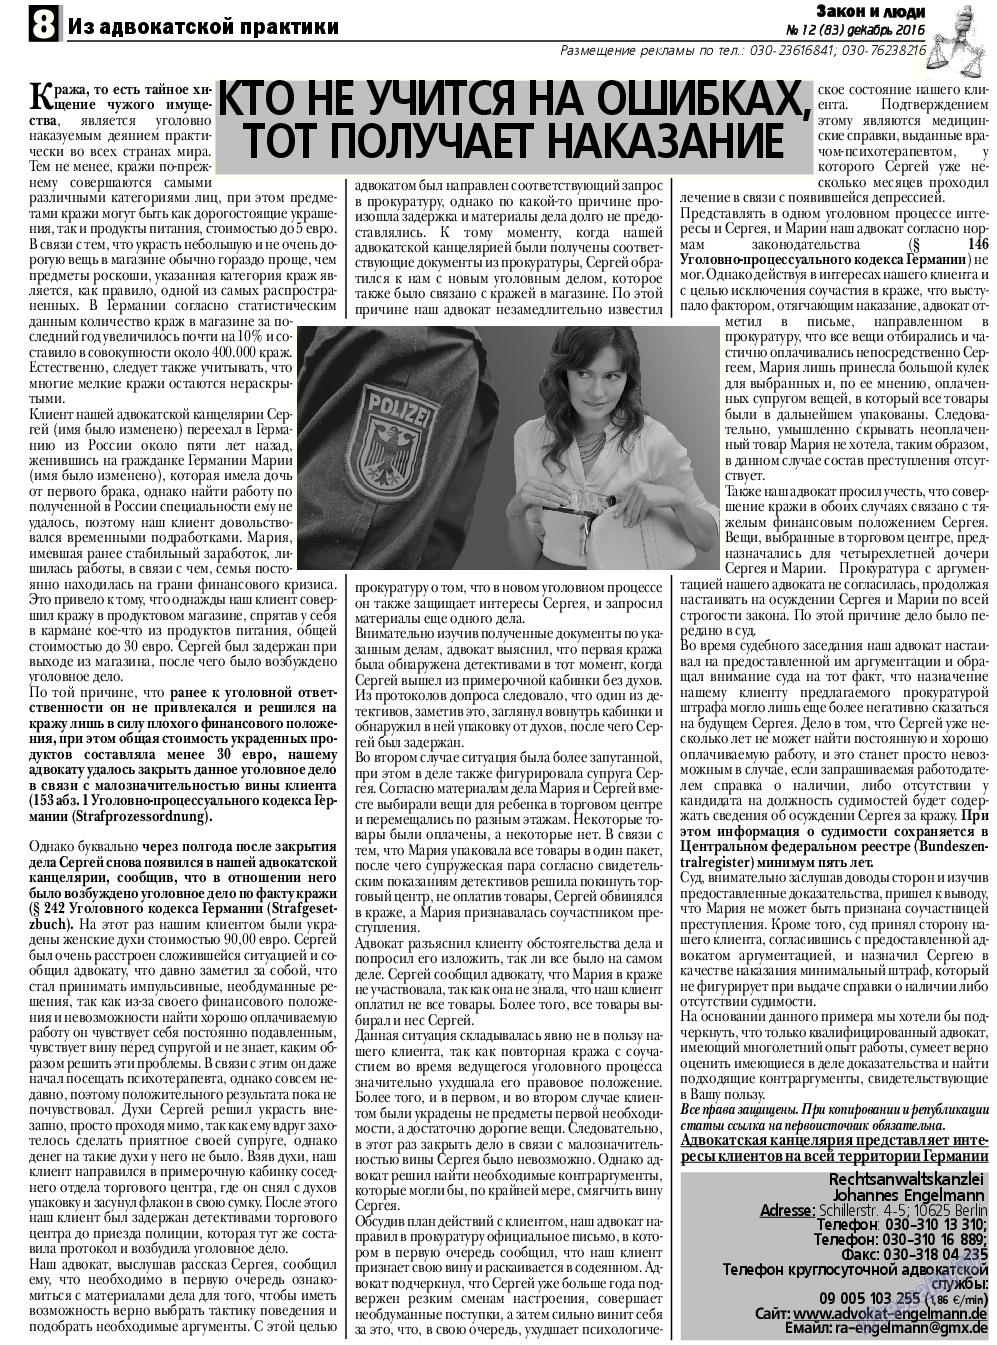 Закон и люди, газета. 2016 №12 стр.8